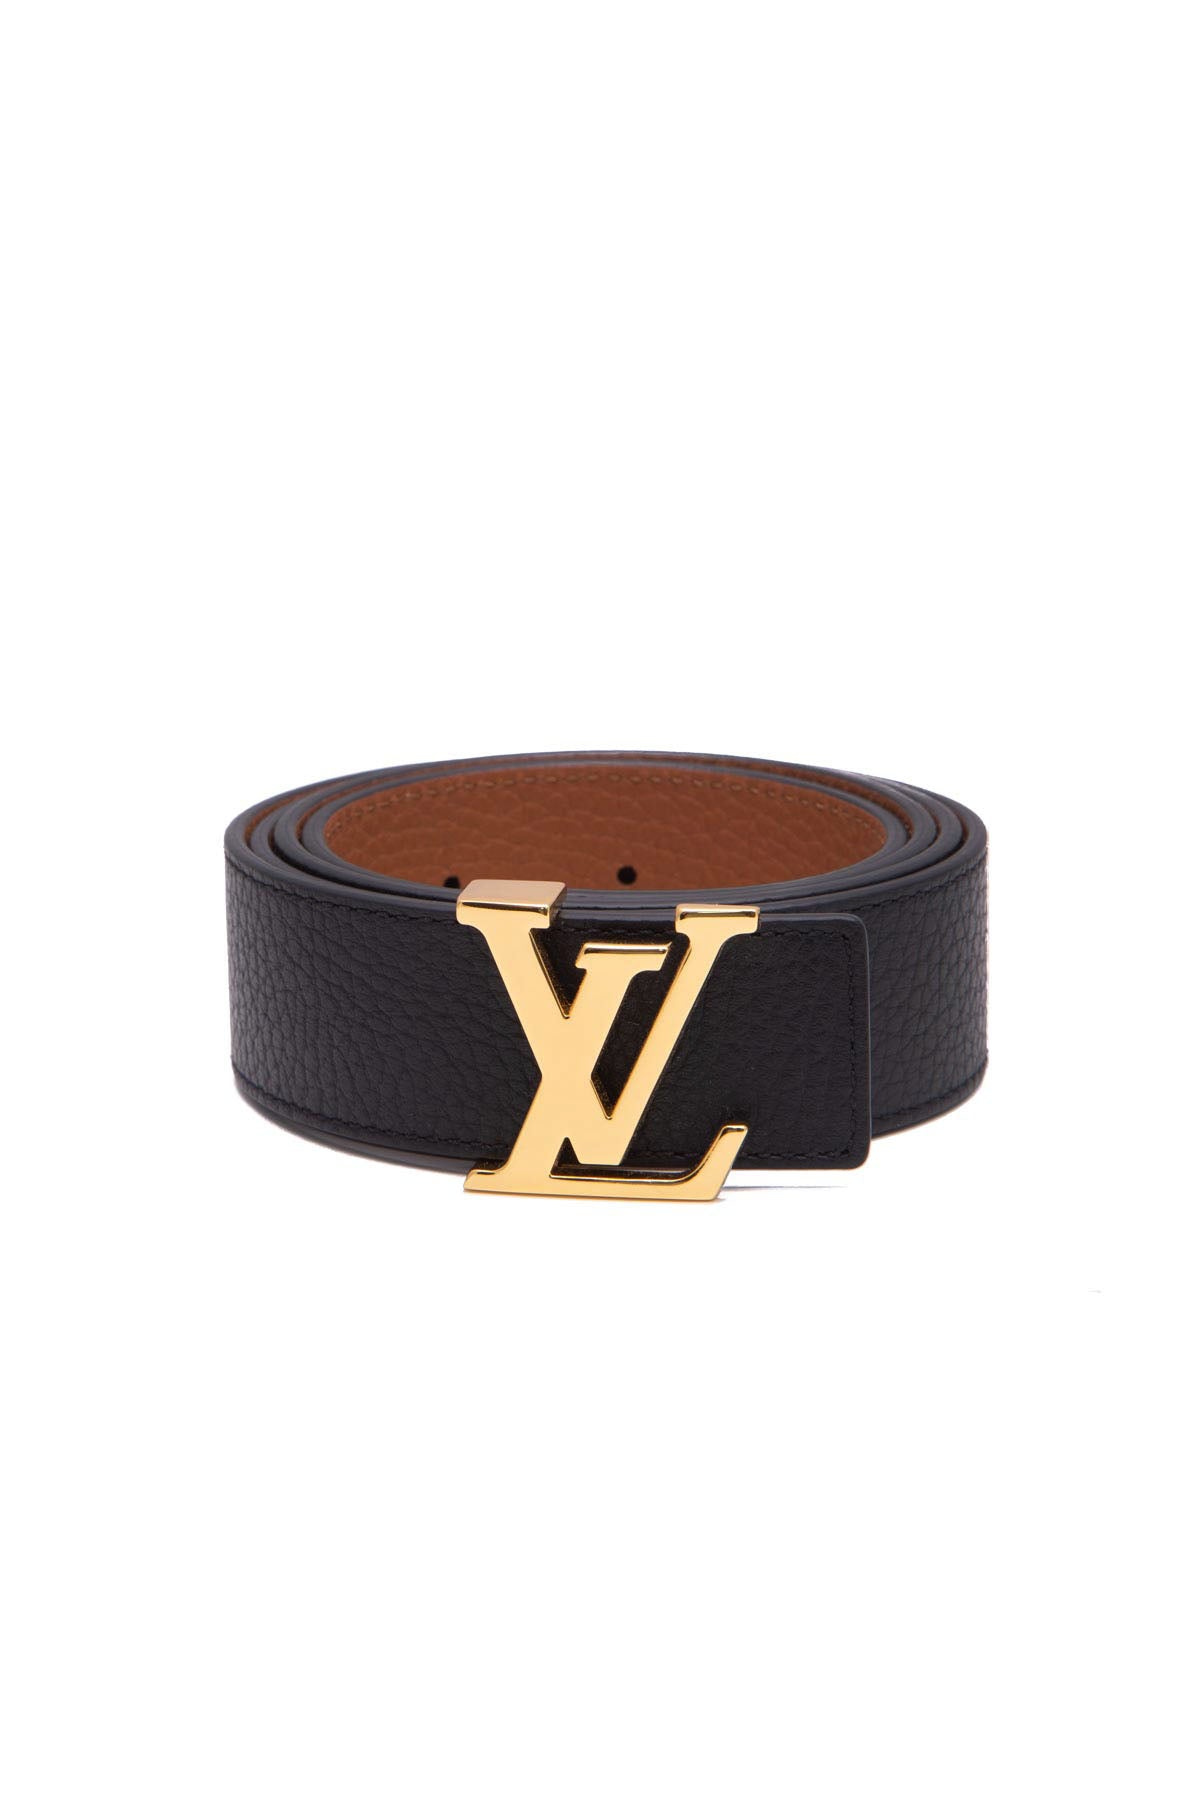 Louis Vuitton Belts [LV] (Black/Gray & Brown/Gold) - Size 34